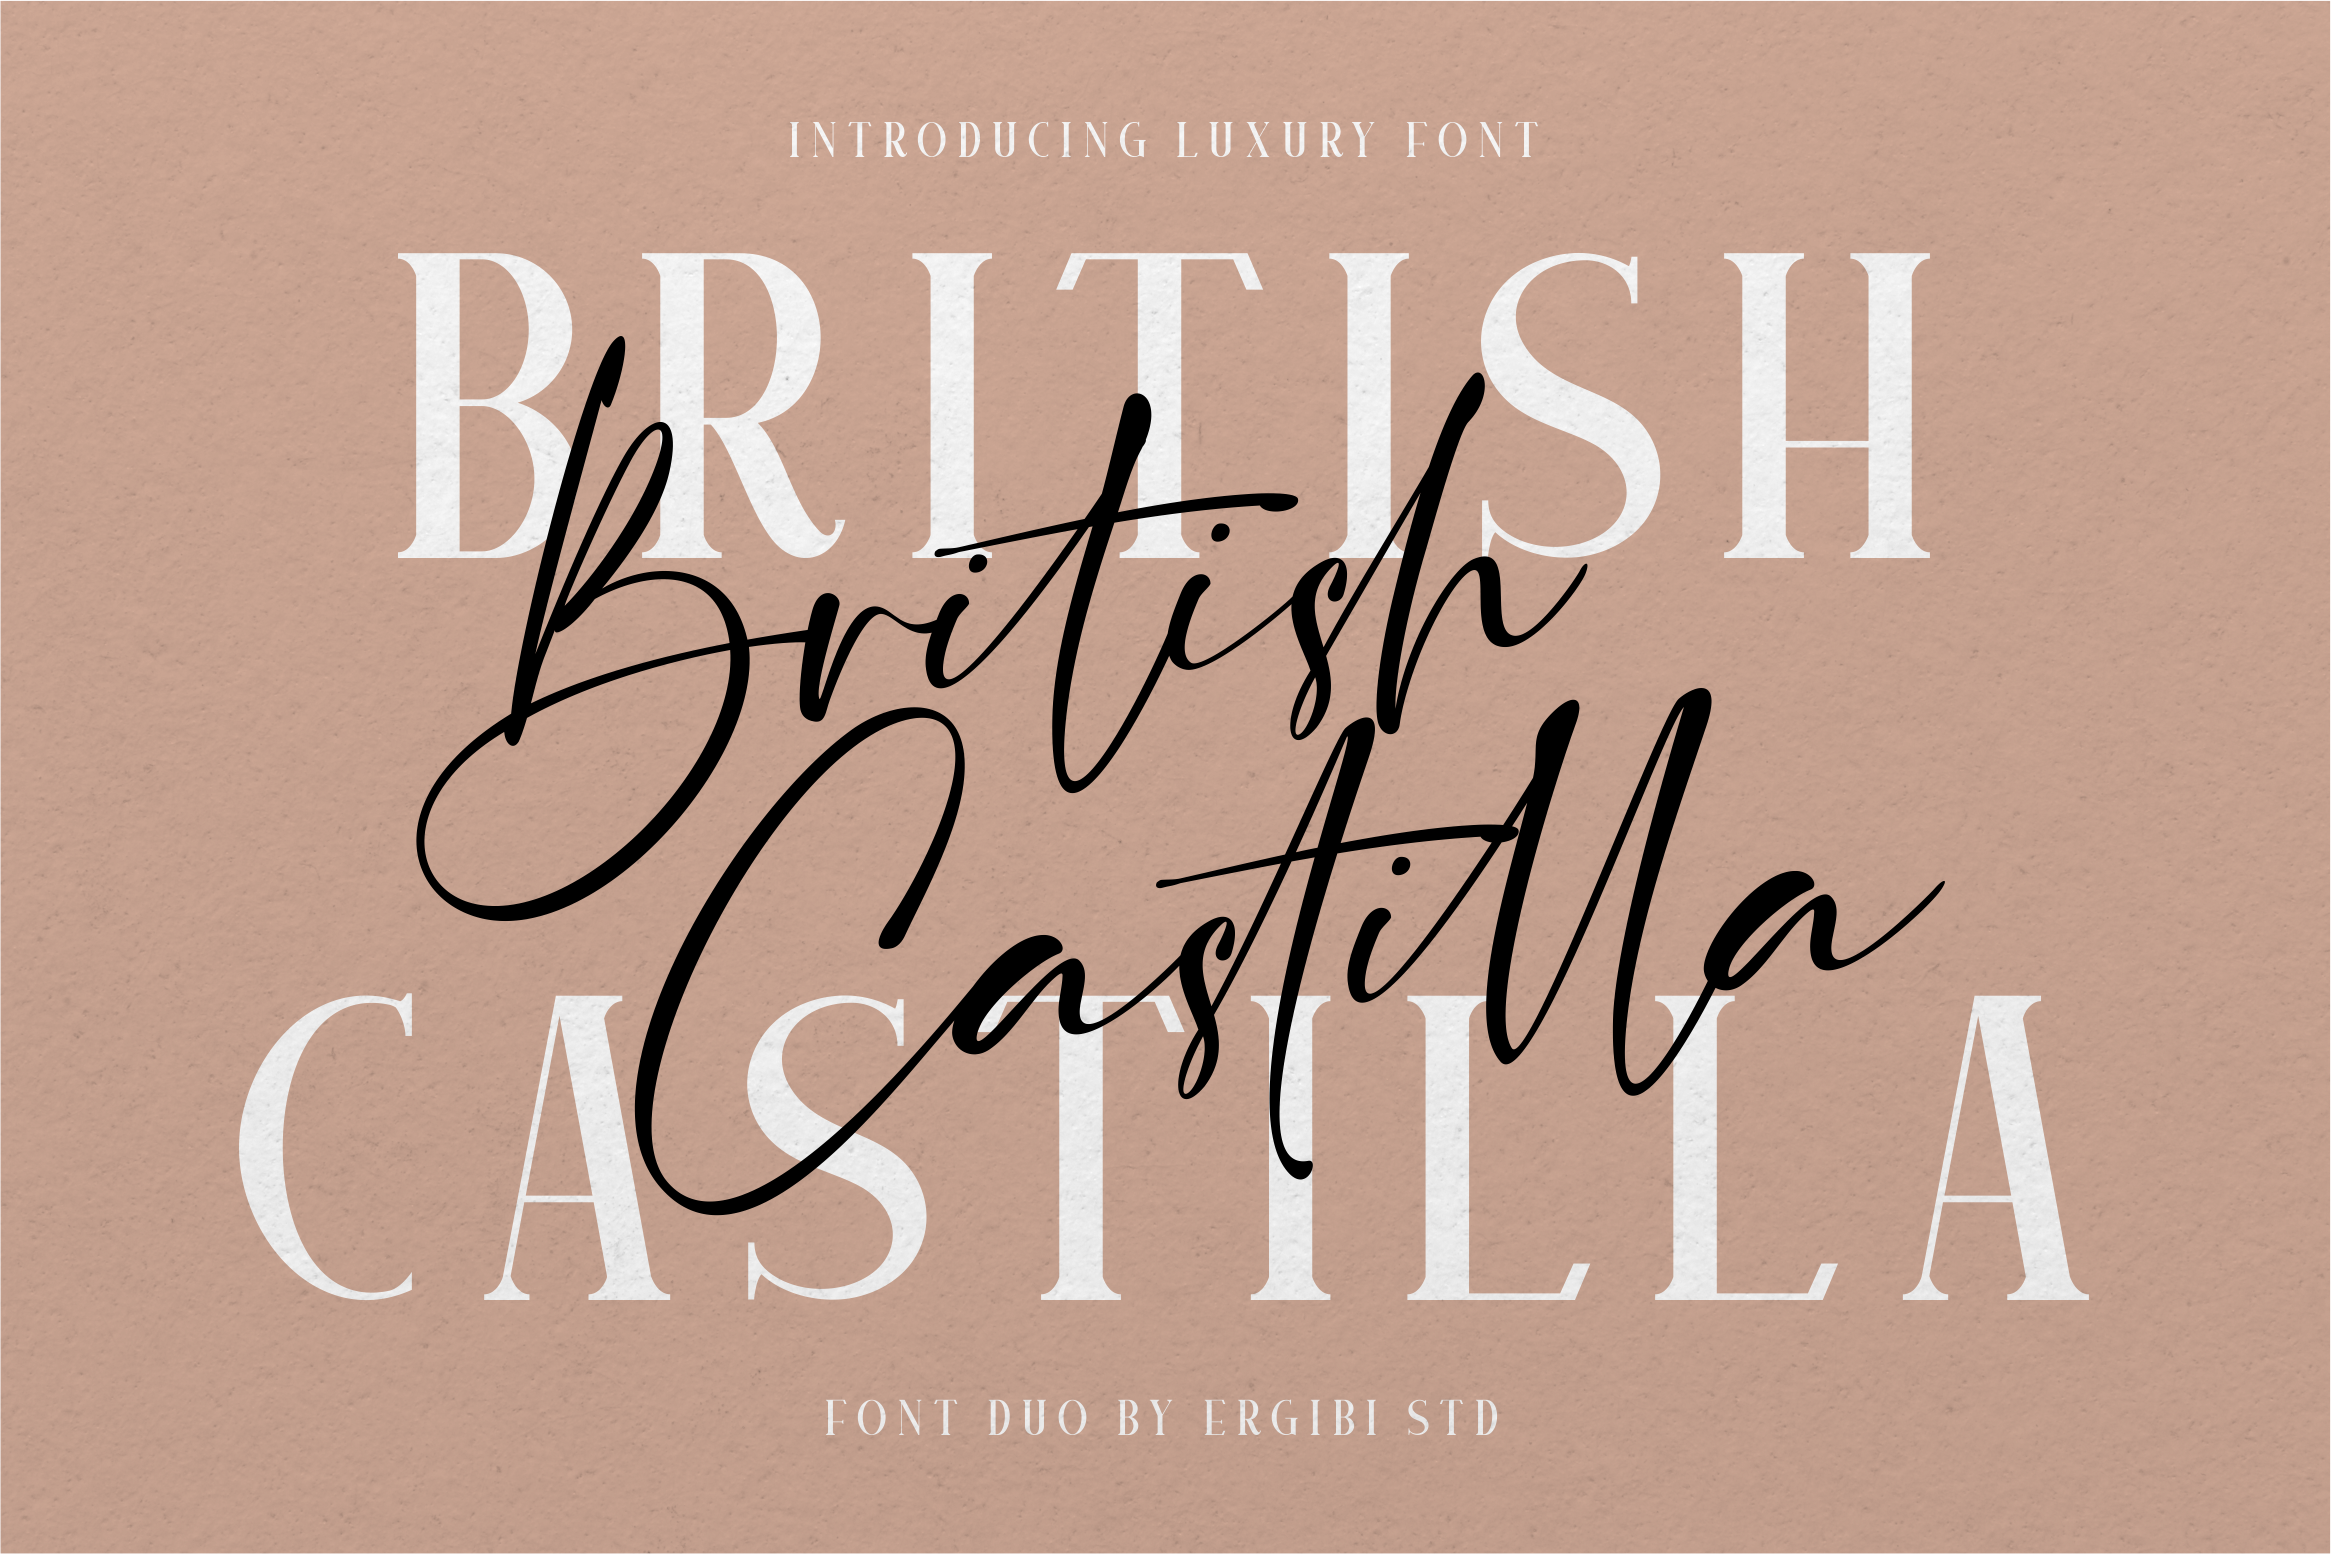 British Castilla Script